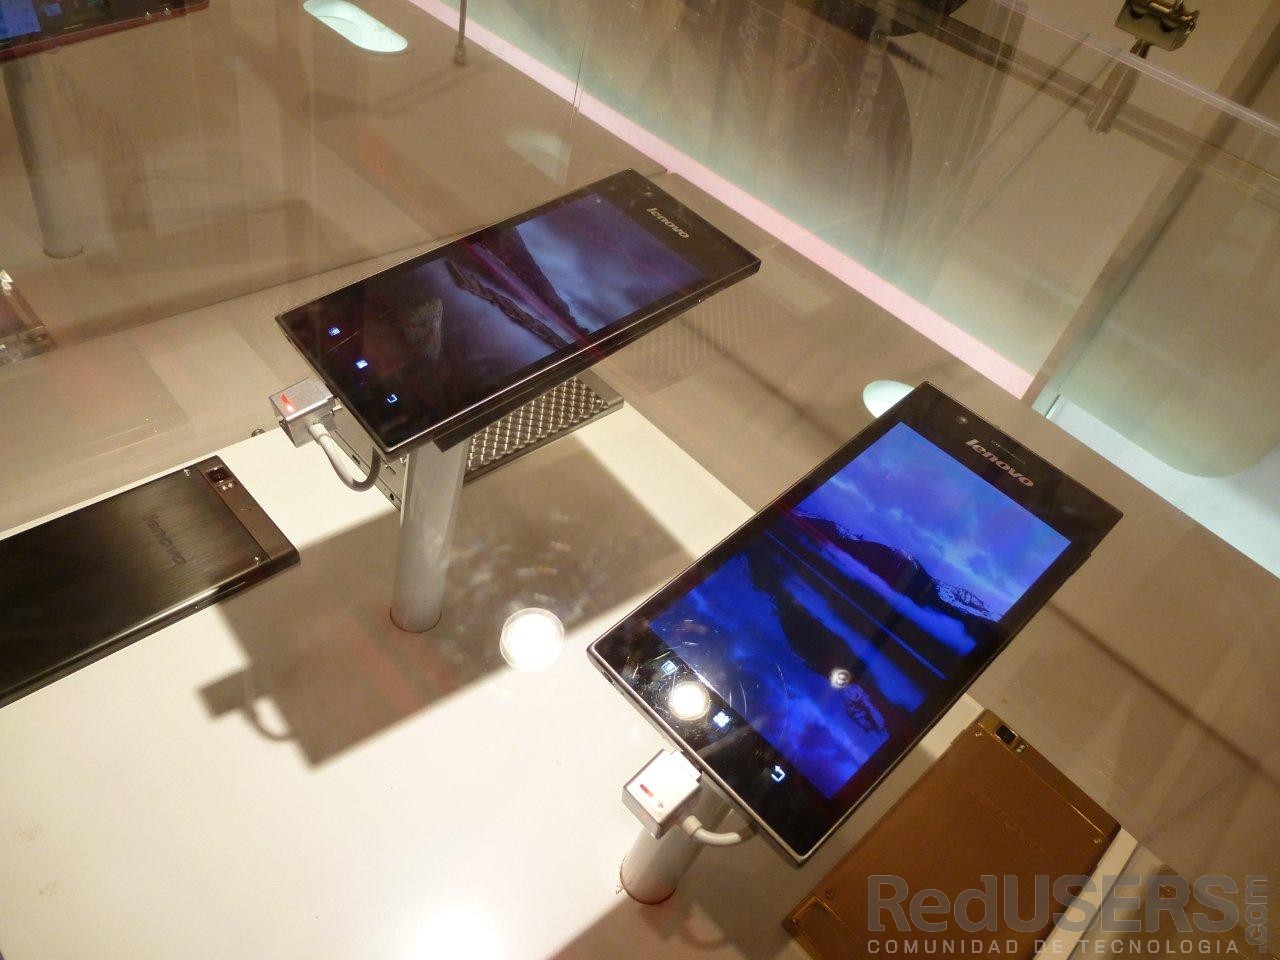 El IdeaPhone K900, uno de los grandes anuncios de Lenovo durante la CES. veremos más de el en el MWC